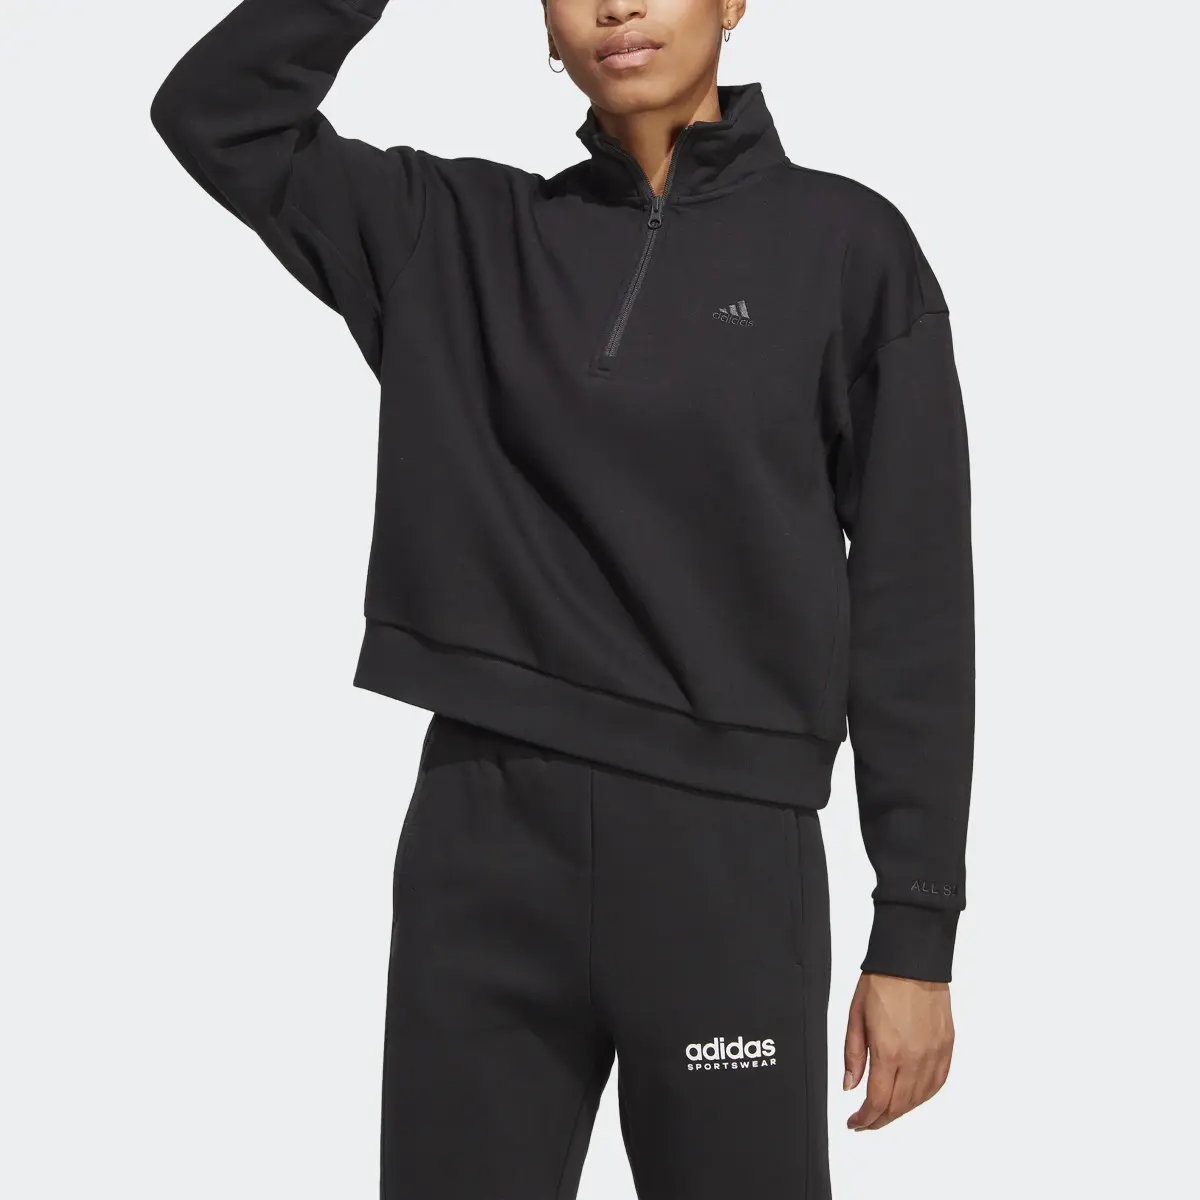 Adidas ALL SZN Fleece Graphic Quarter-Zip Sweatshirt. 1